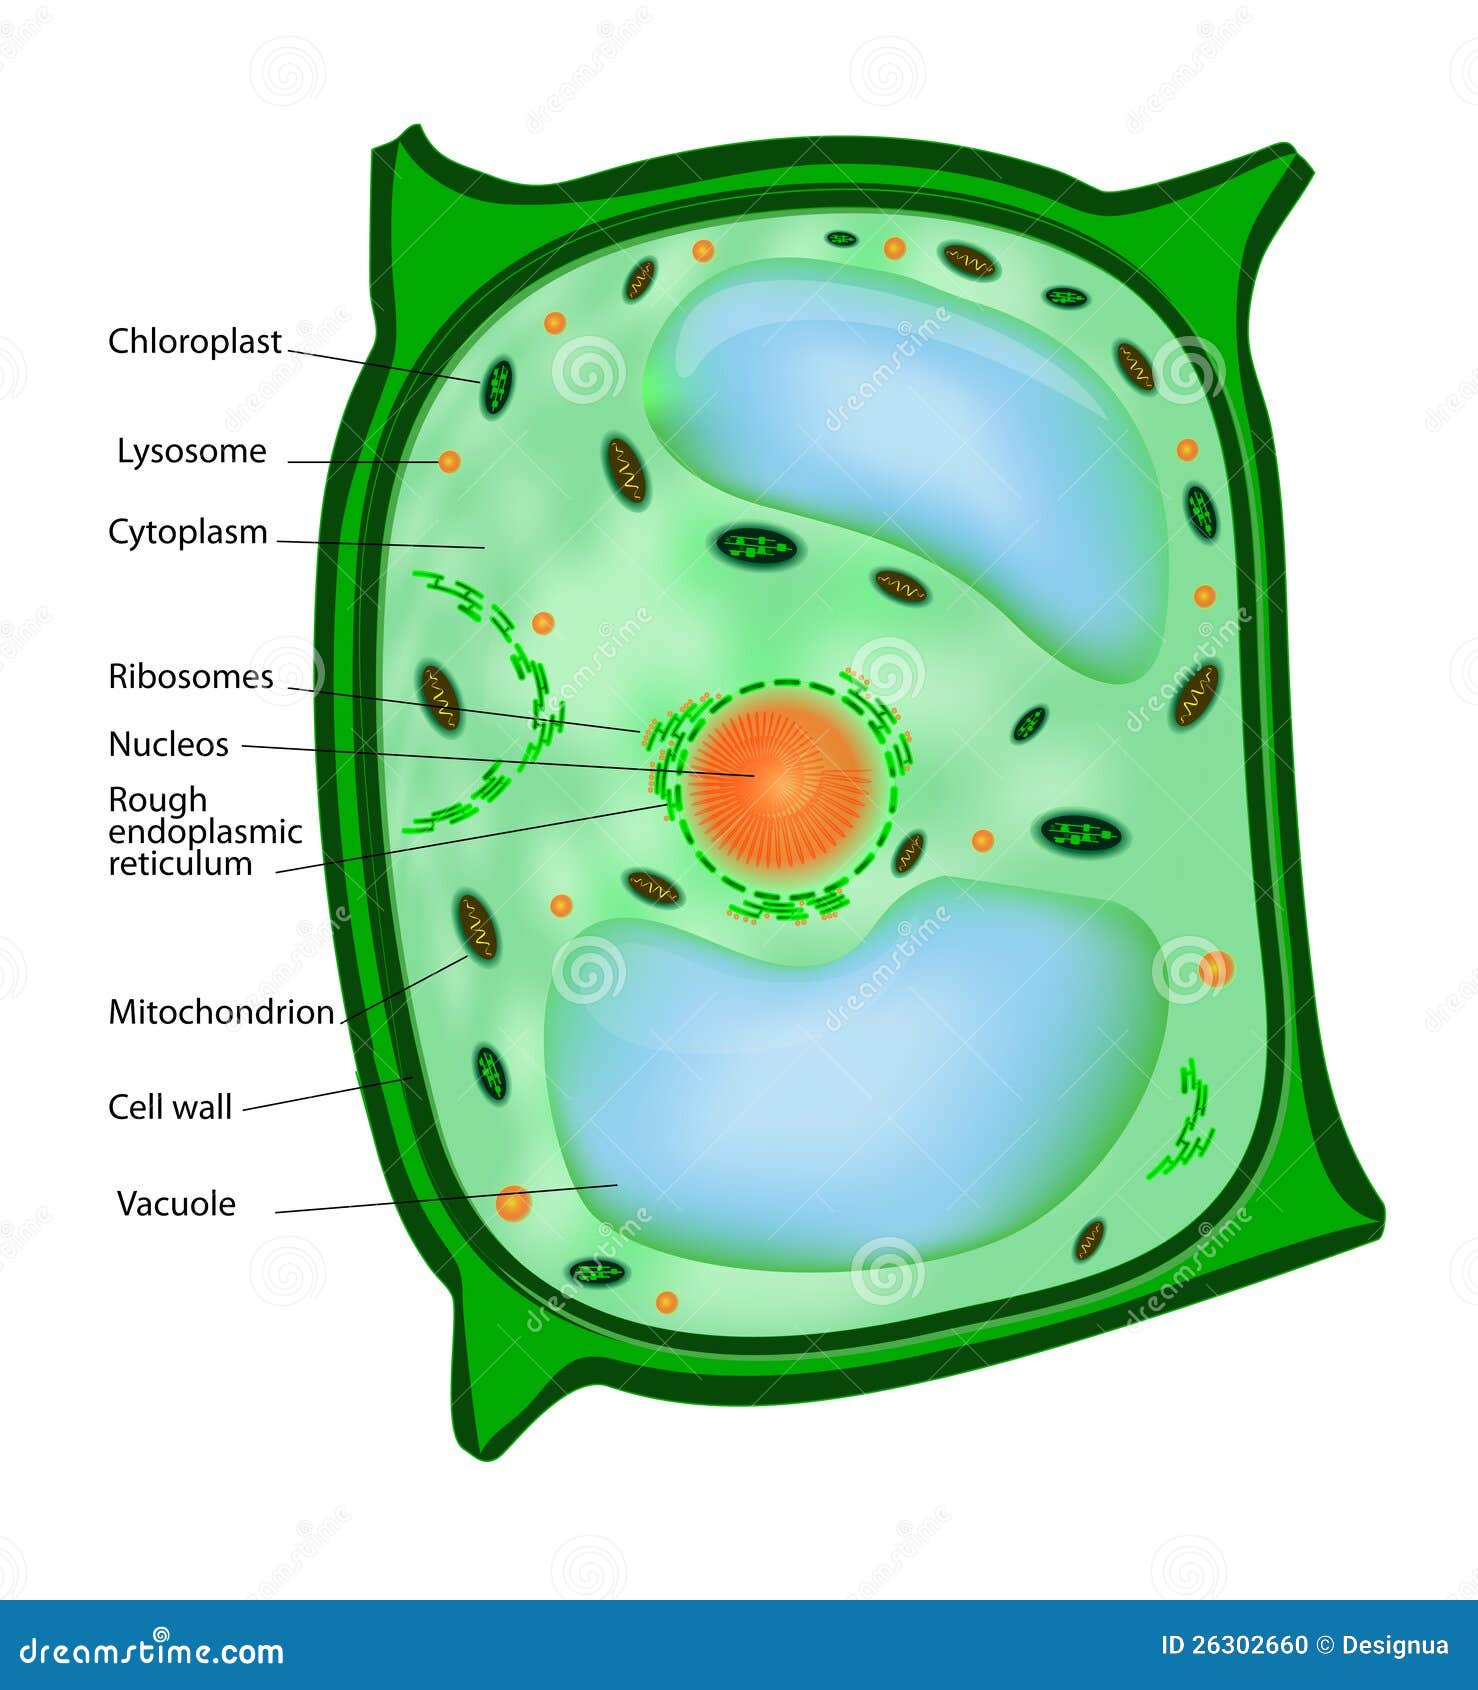 Клетка без цитоплазмы. Строение растительной клетки легкий рисунок. Клетка биология 5 класс растительная клетка легкий. Рисунок растительной клетки 5 класс биология. Строение клетки растения рисунок.